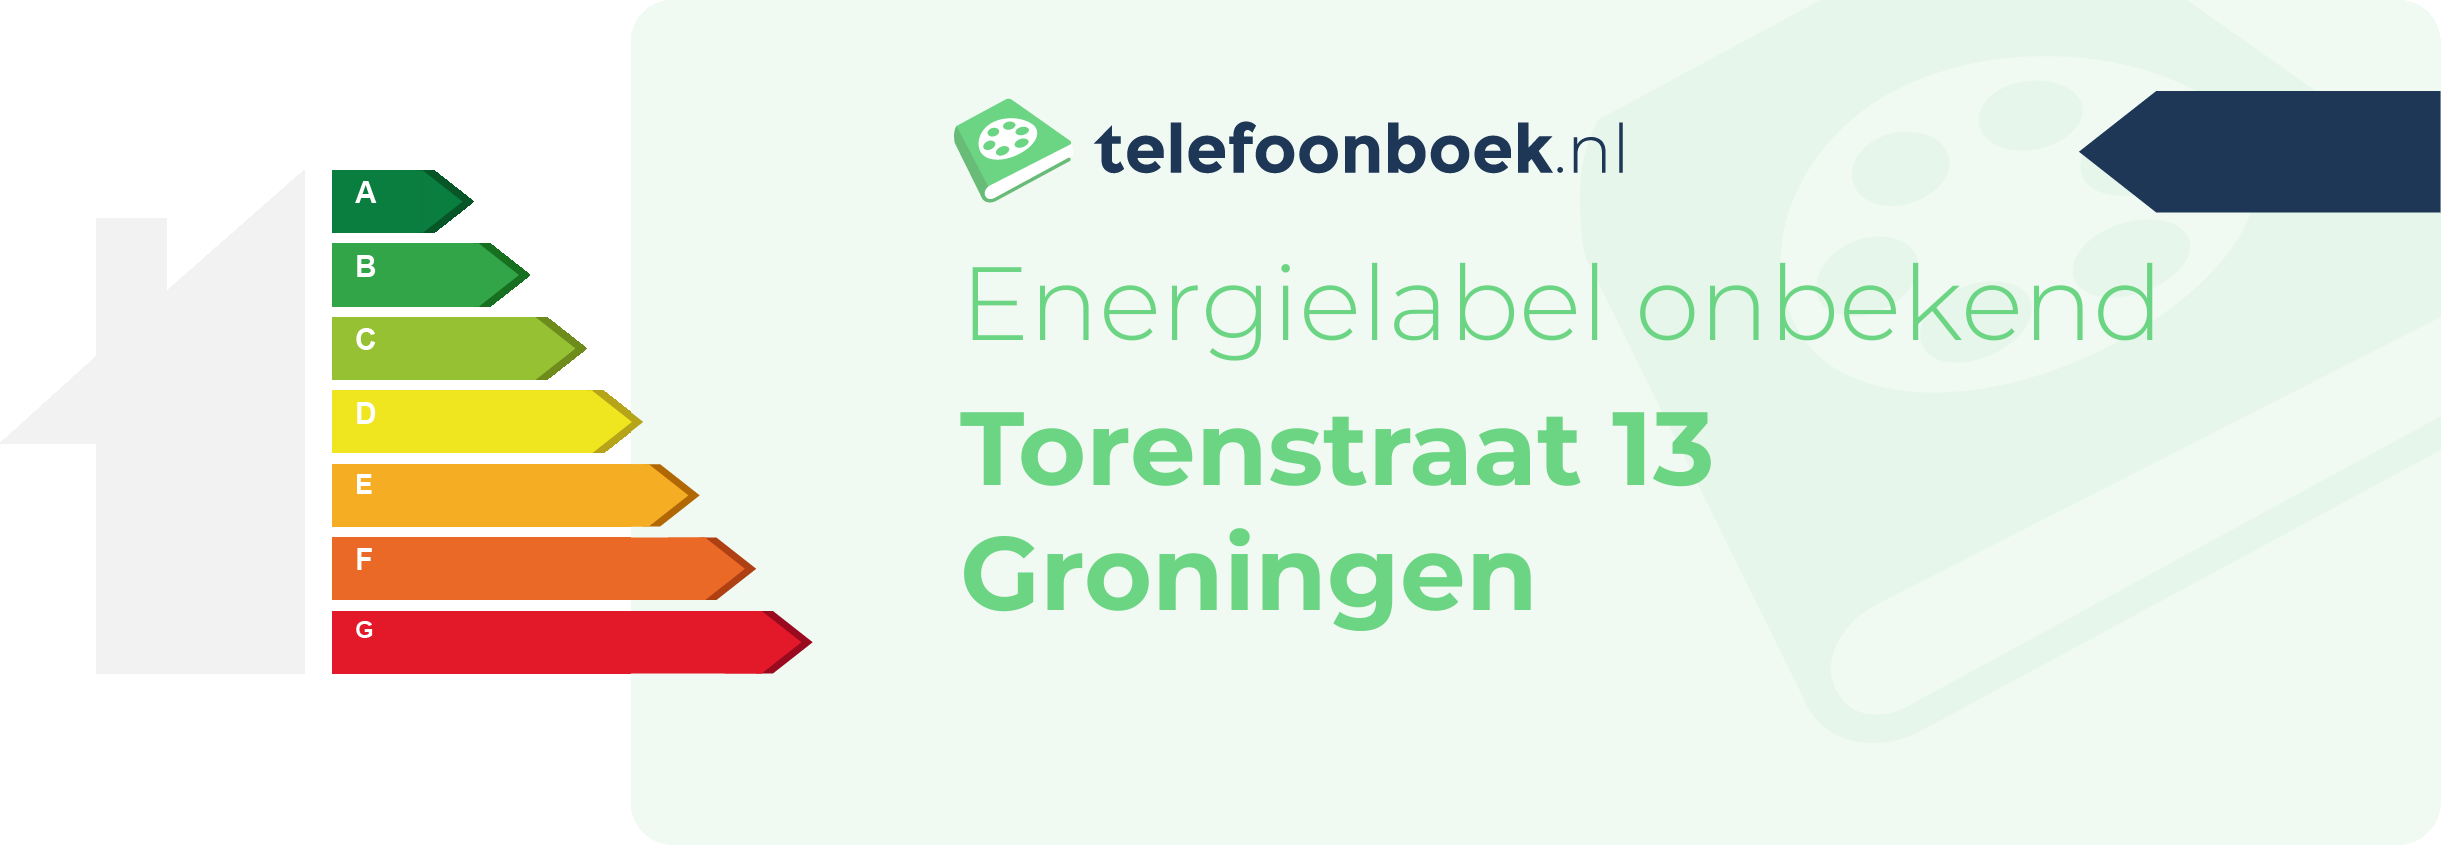 Energielabel Torenstraat 13 Groningen